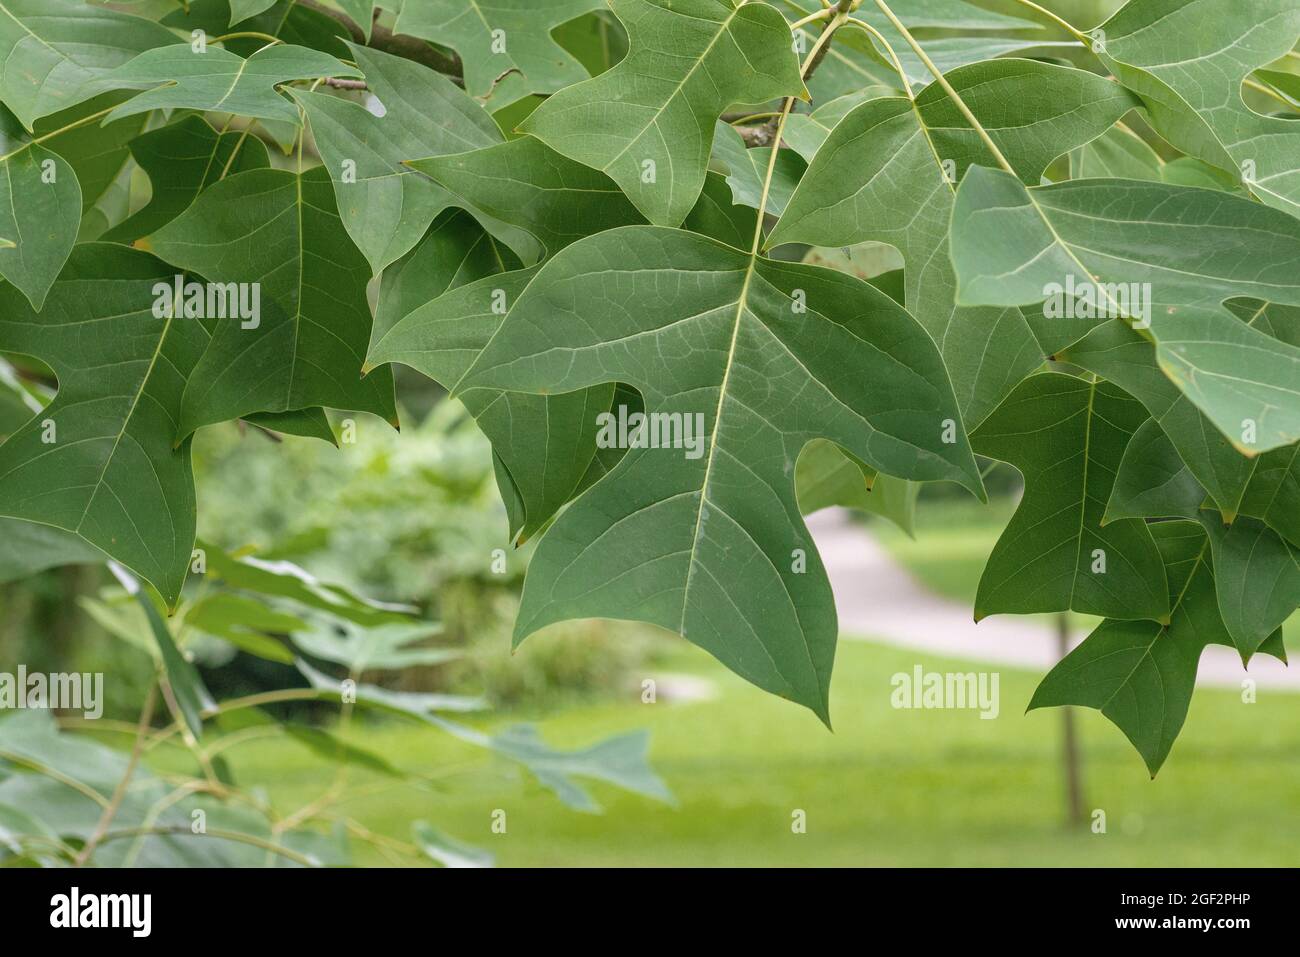 Chinesische Tulpenpappel, chinesischer Tulpenbaum, chinesisches Weißholz (Liriodendron chinensis, Liriodendron chinense), Blätter auf einem Ast Stockfoto